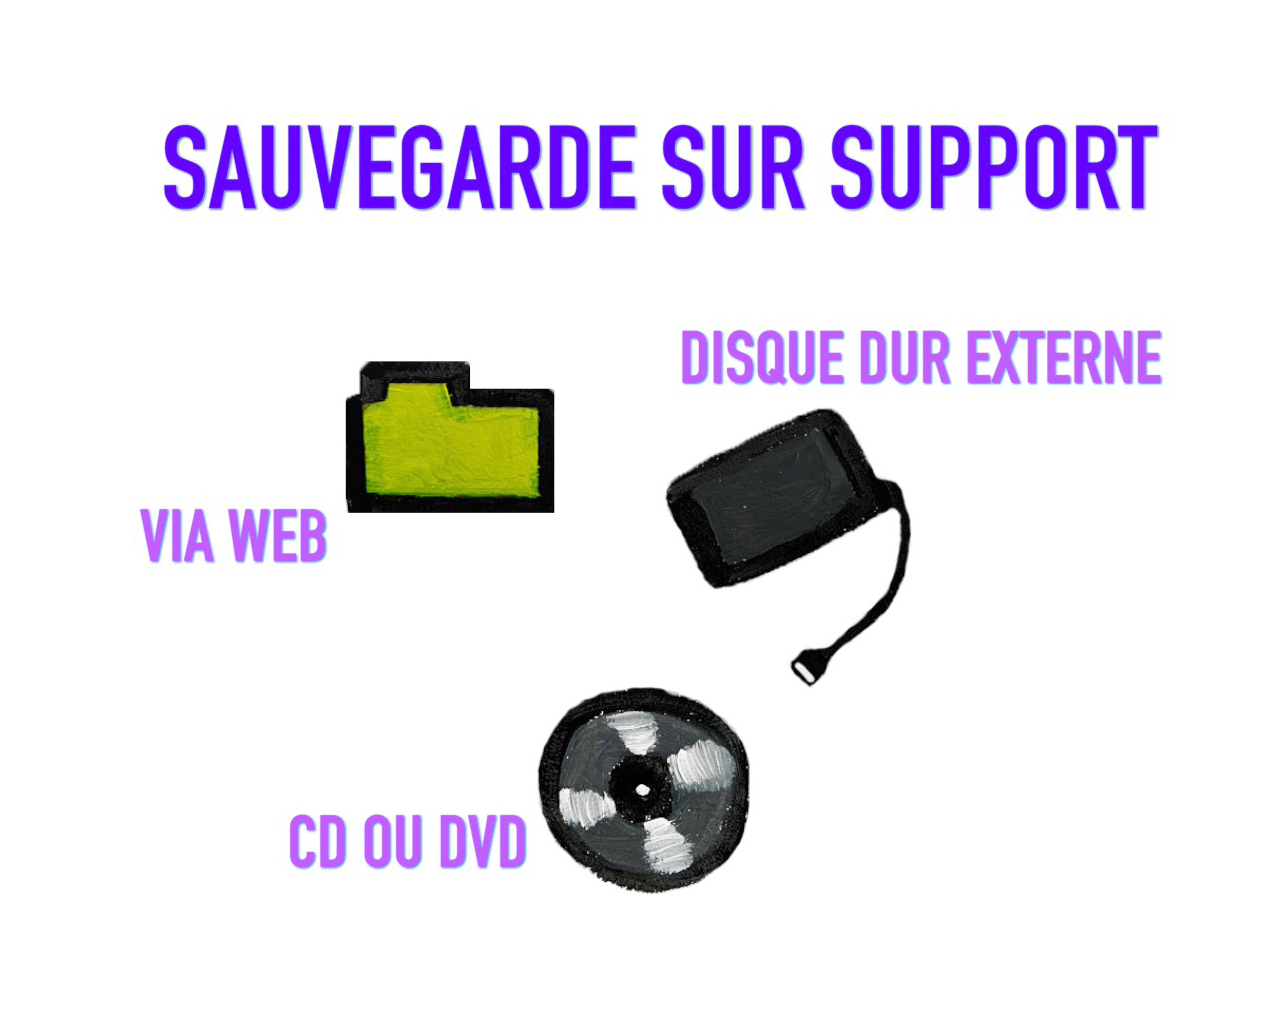 sauvegarde transfert video audio photo sur dvd disque dur geneve suisse